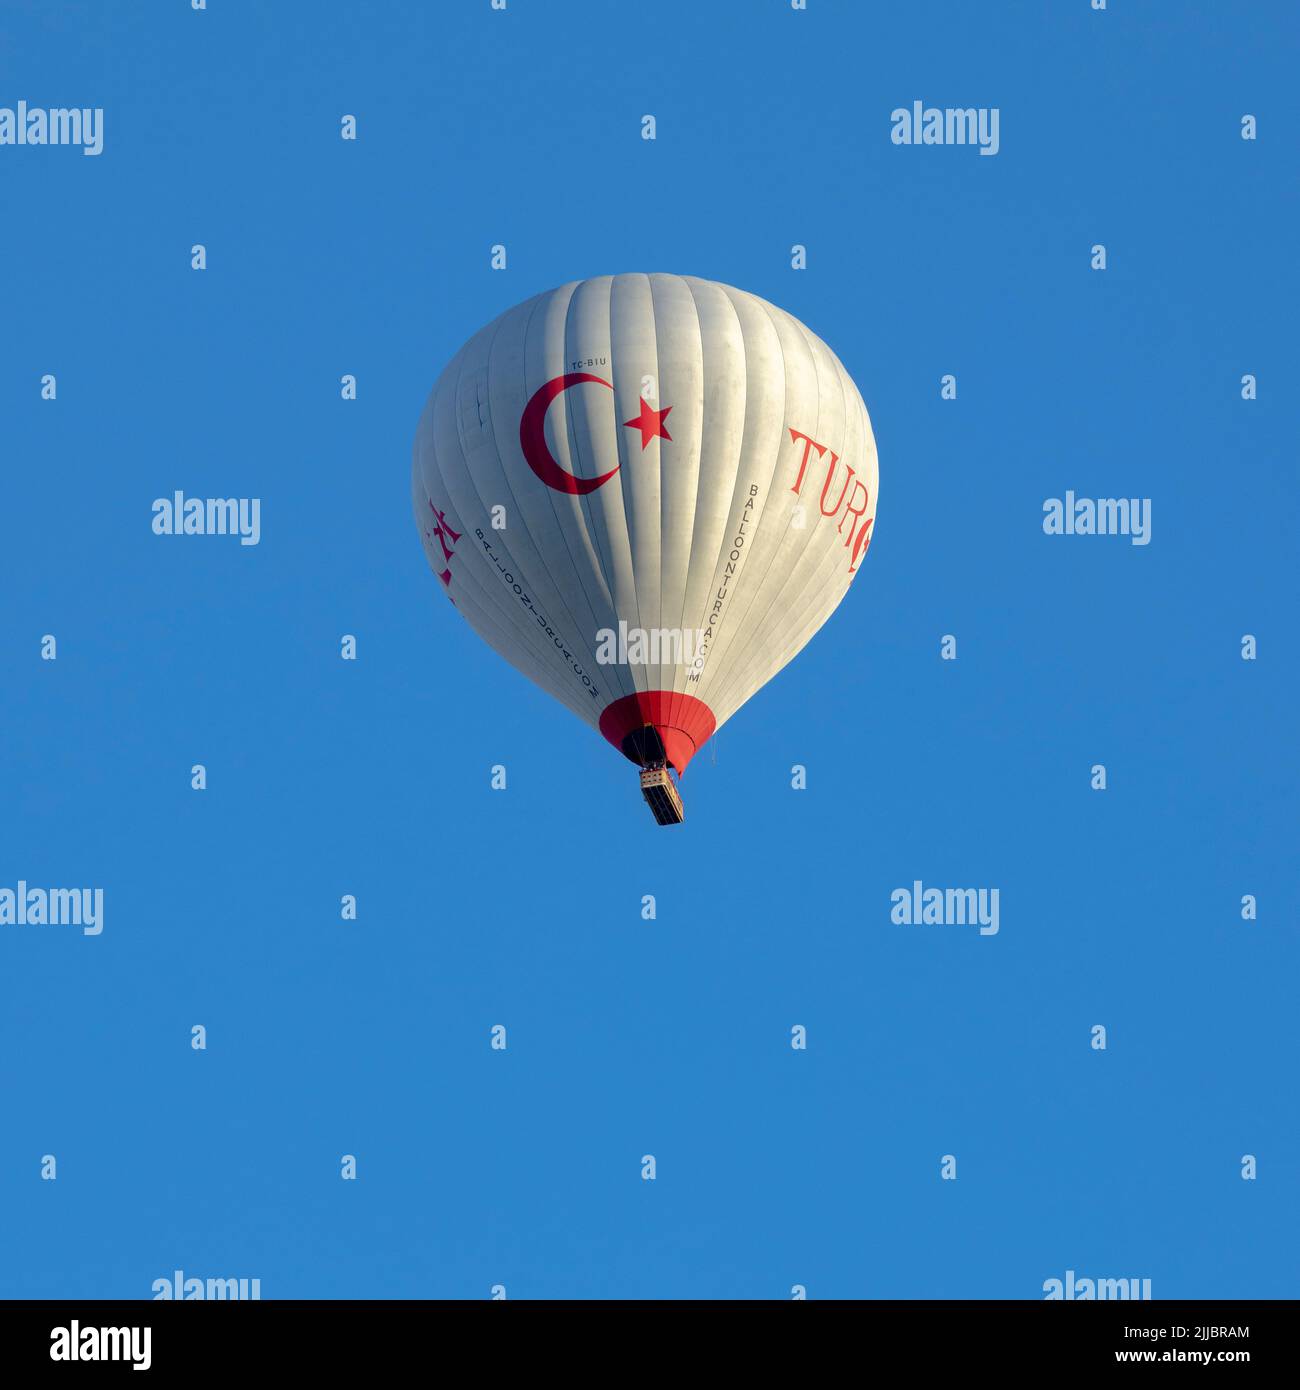 GÖREME/TURQUIE - 27 juin 2022: Ballon d'air chaud avec drapeau de la turquie vole dans le ciel bleu Banque D'Images